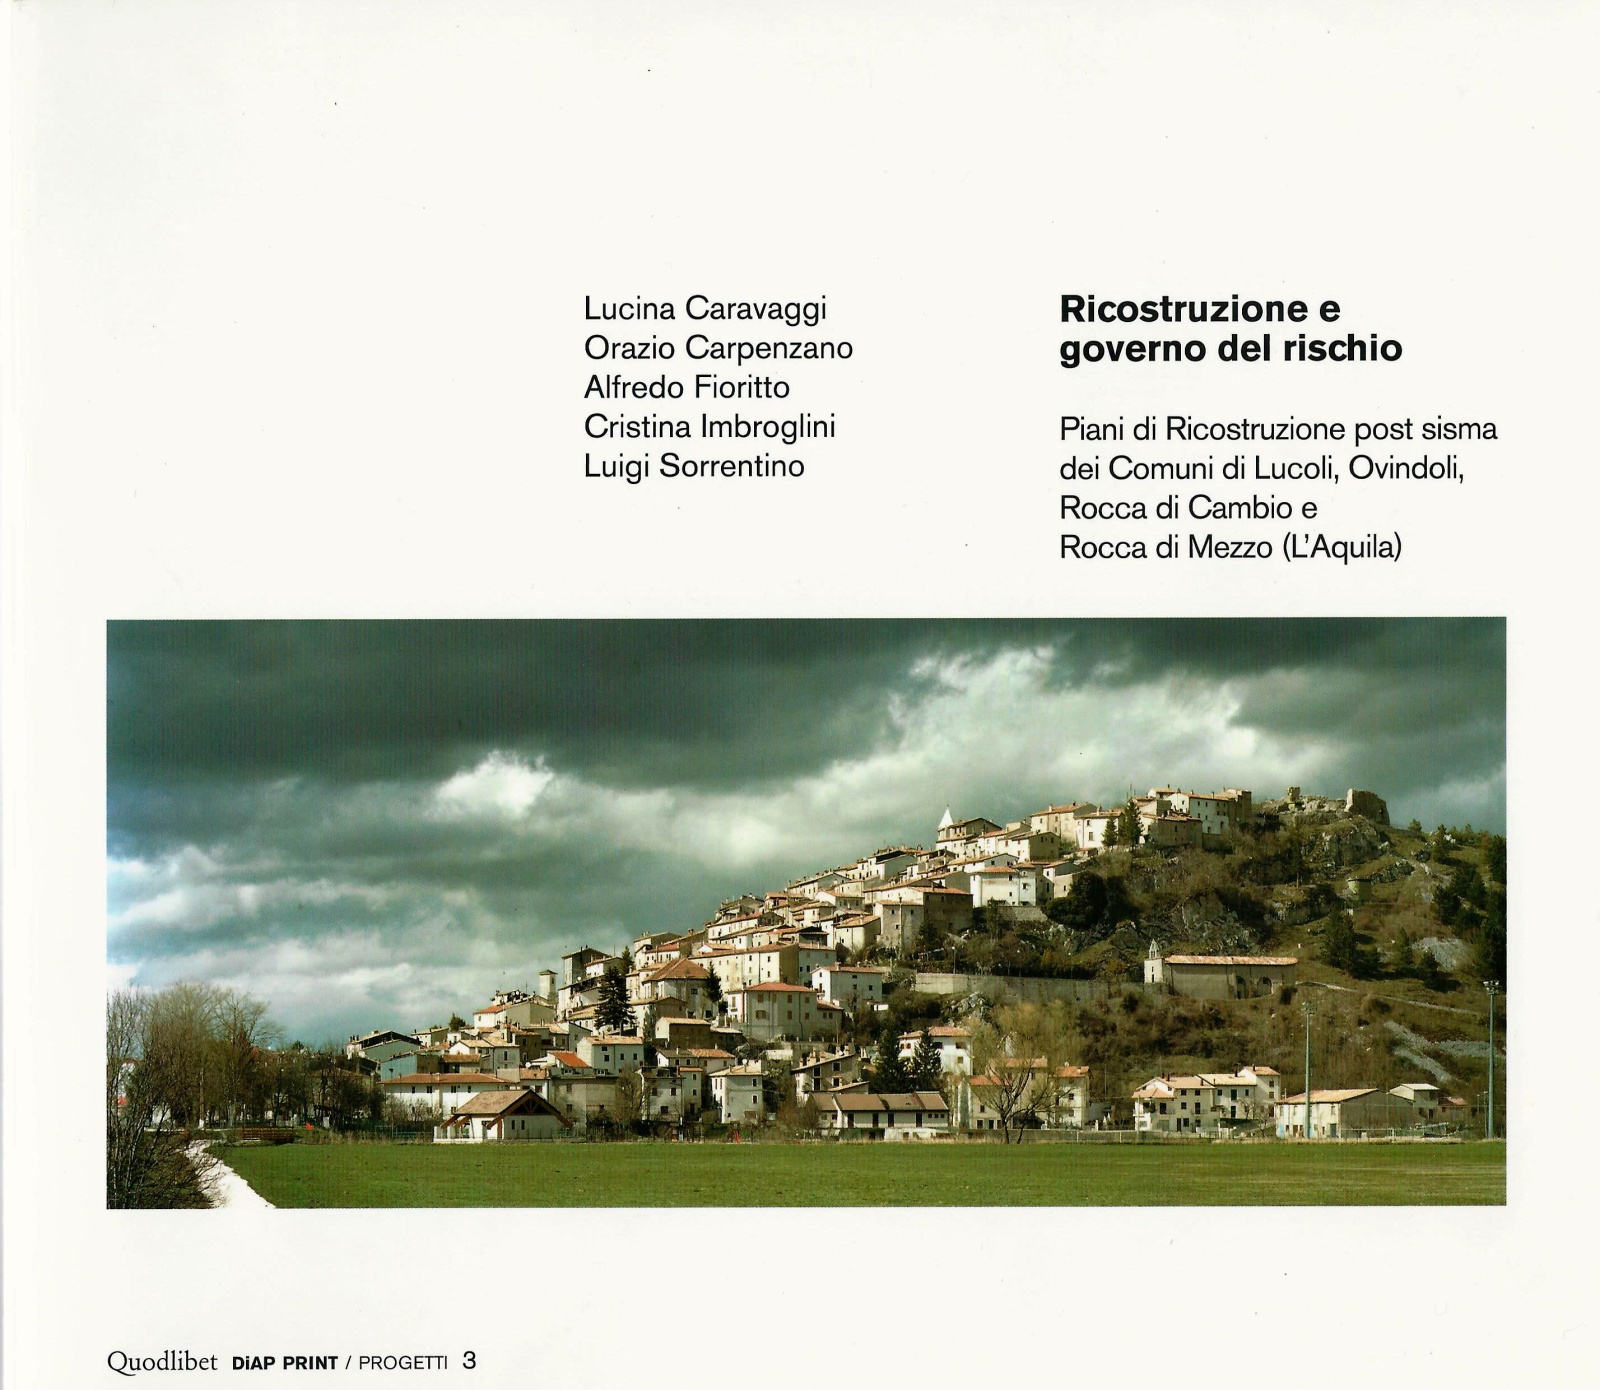 2013 - Ricostruzione e governo del rischio.Piani di ricostruzione post sisma dei comuni di Lucoli, Ovindoli, Rocca di Cambio e Rocca di Mezzo (L'Aquila)